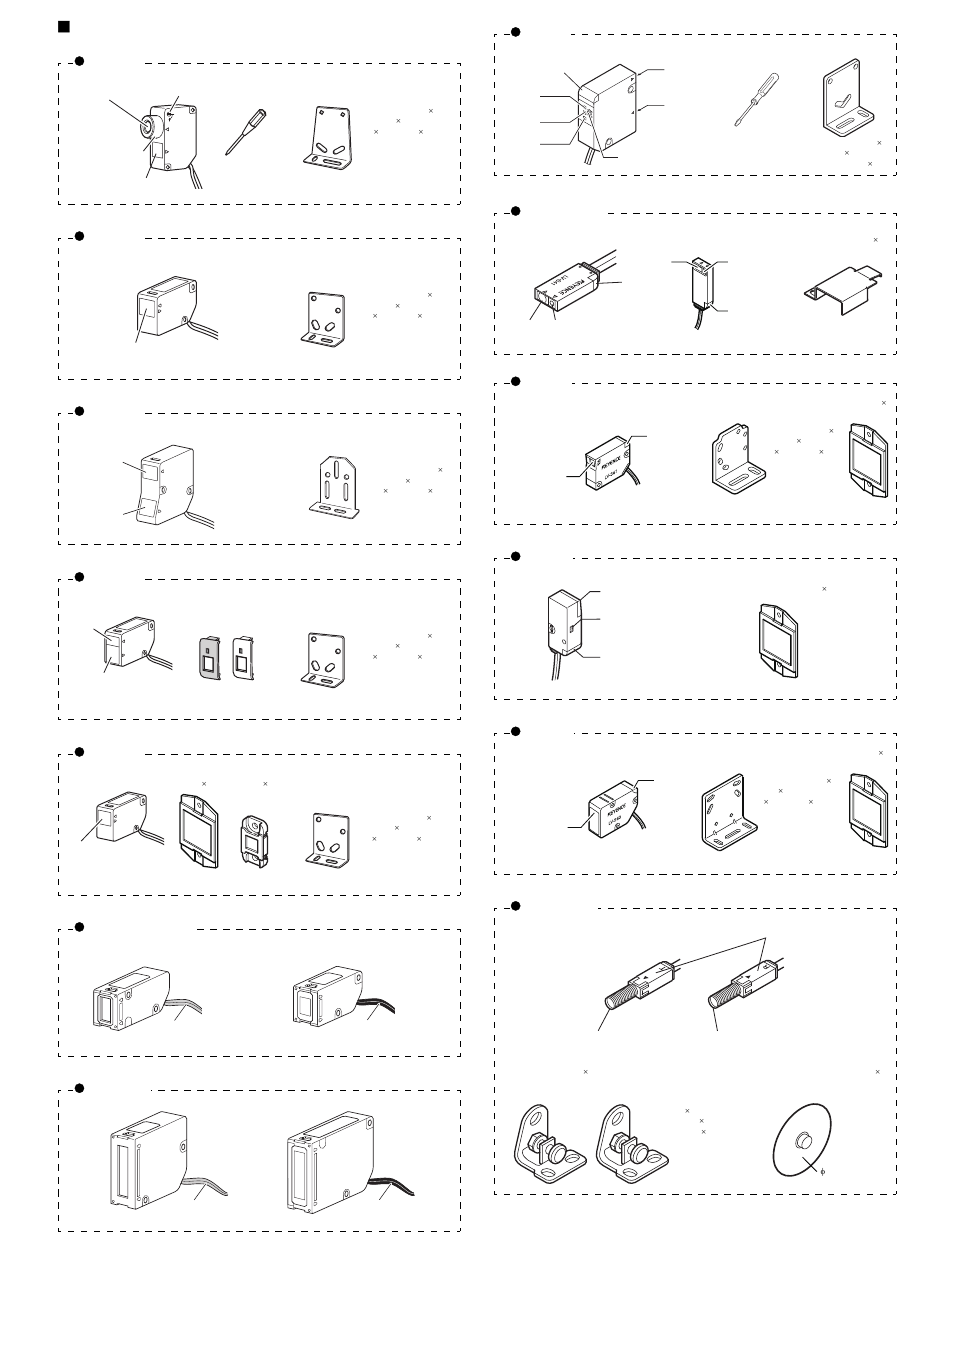 Sensor head, Lv-nh32, Lv-nh35 | KEYENCE LV-N10 Series User Manual | Page 2 / 12